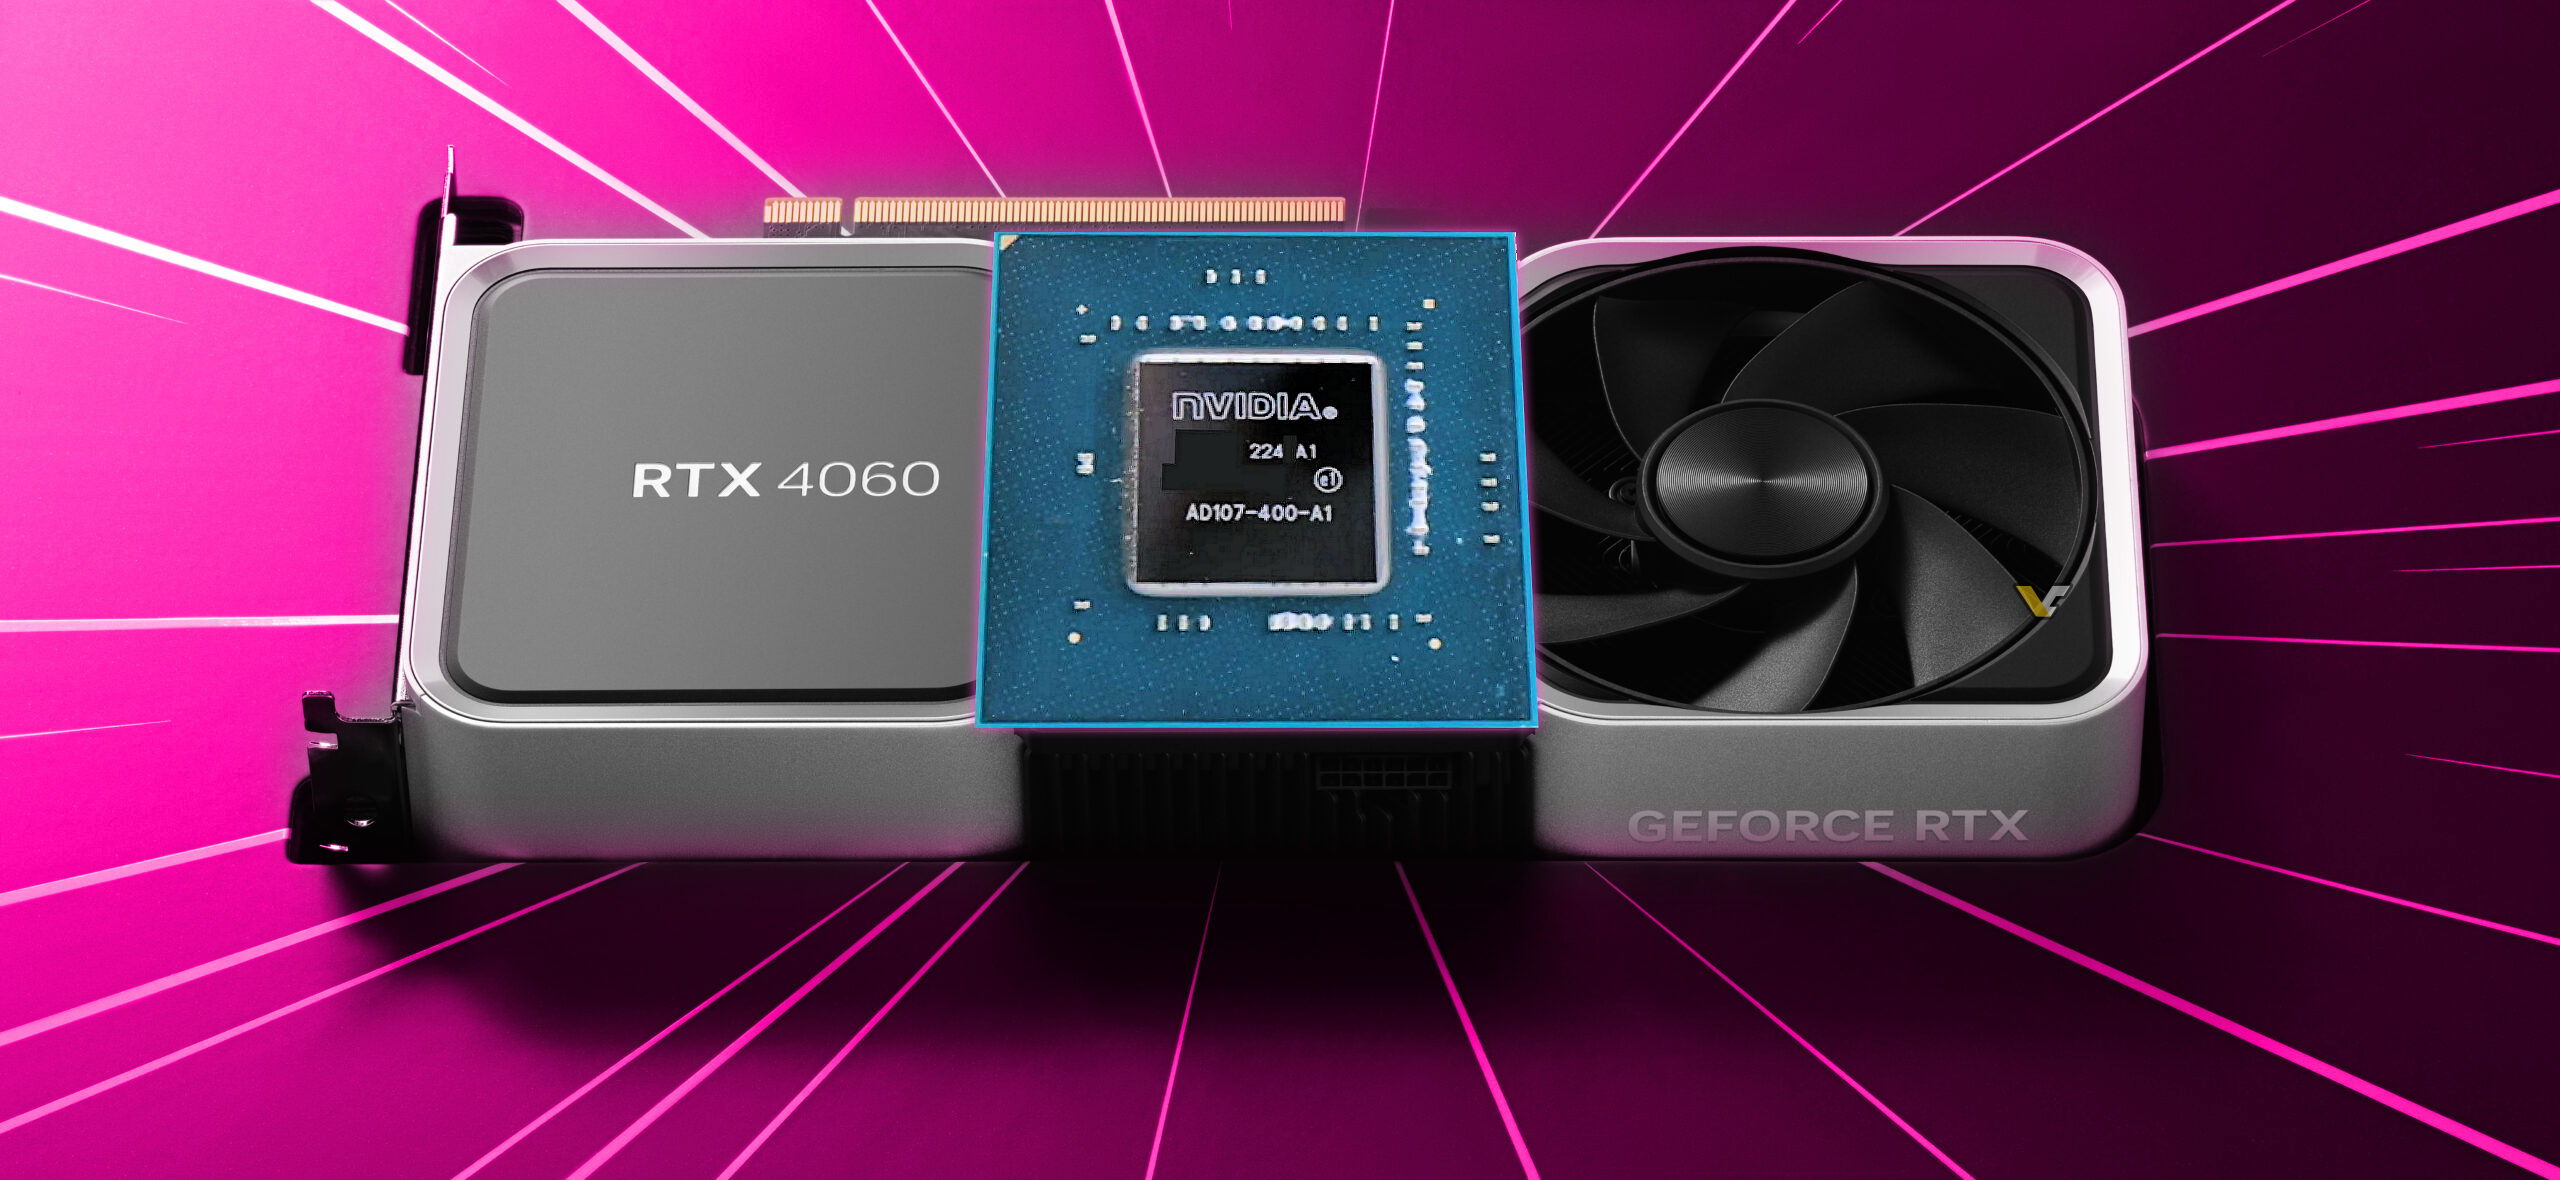 Procesor graficzny NVIDIA AD107-400 przedstawiony dla karty GeForce RTX 4060